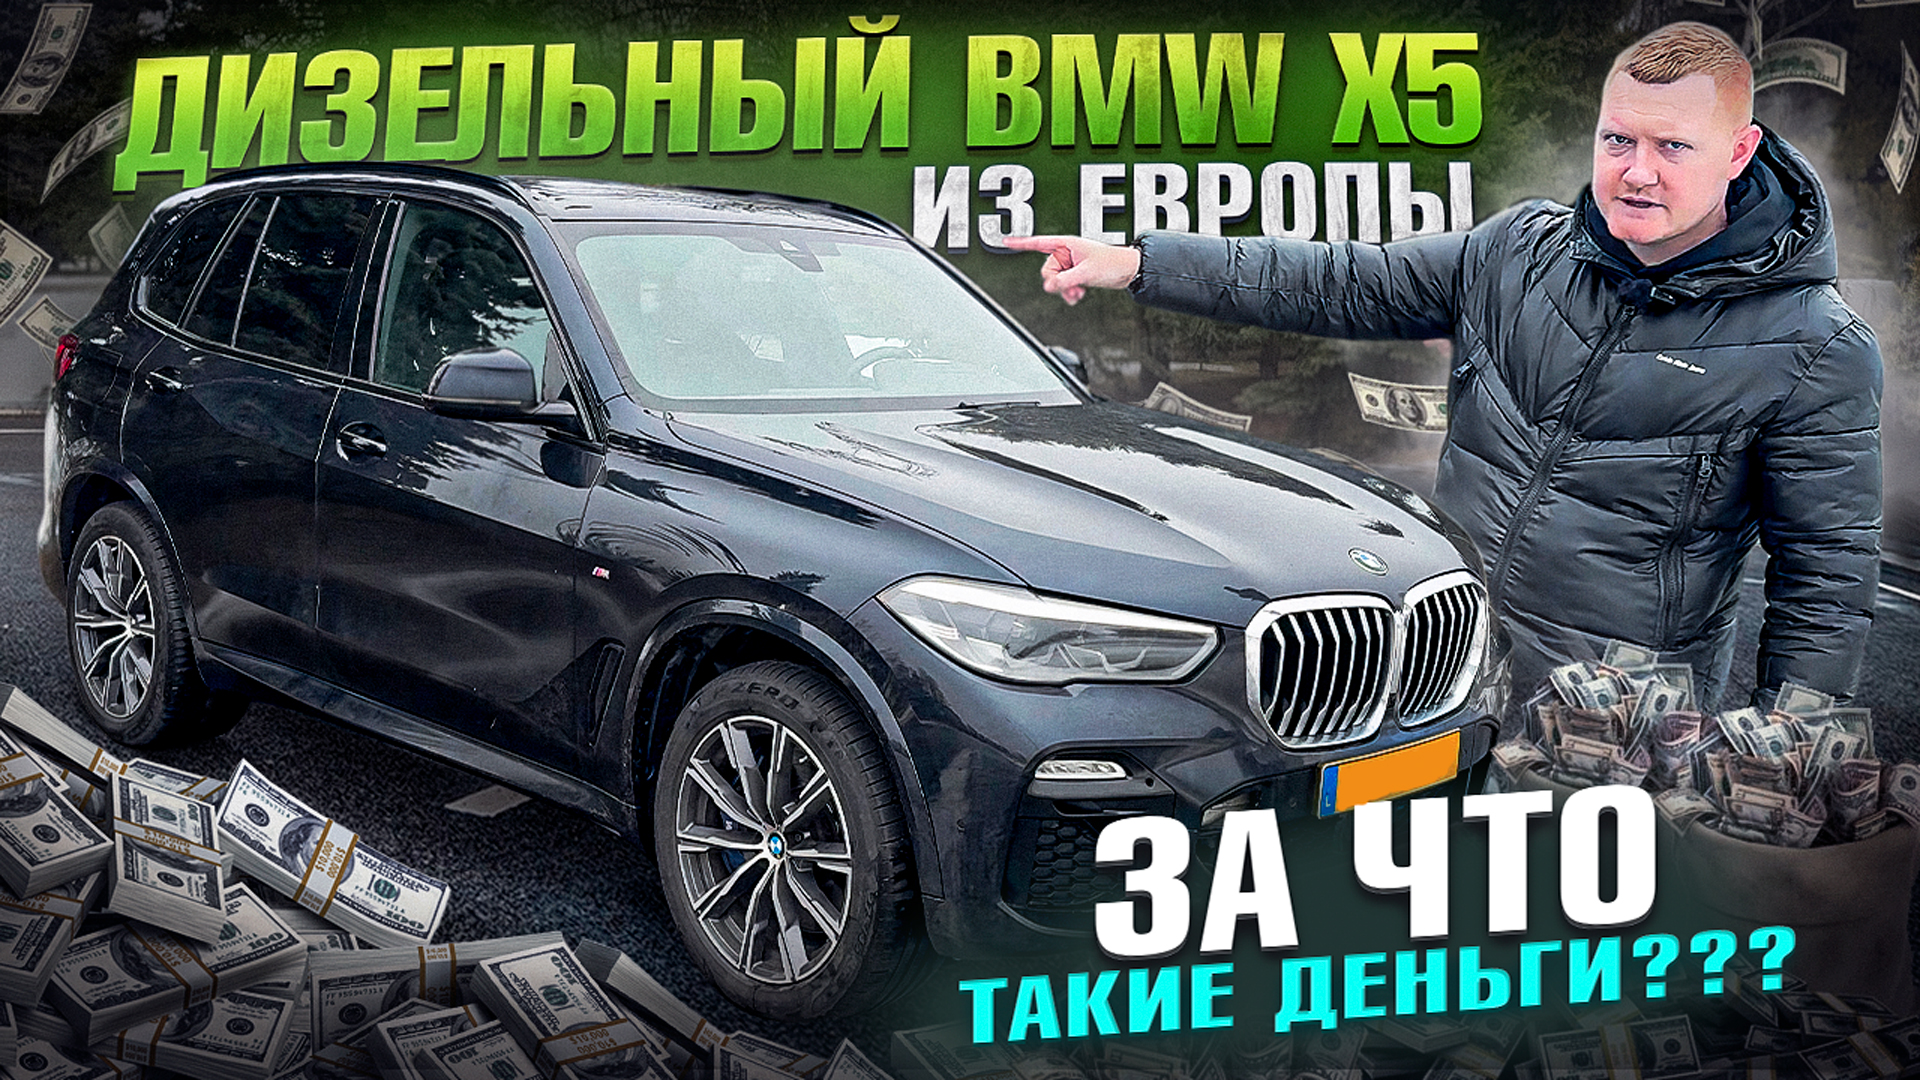 BMW X5 3.0 дизель c пробегом 136 тыс км! Сколько стоит авто из ЕВРОПЫ?